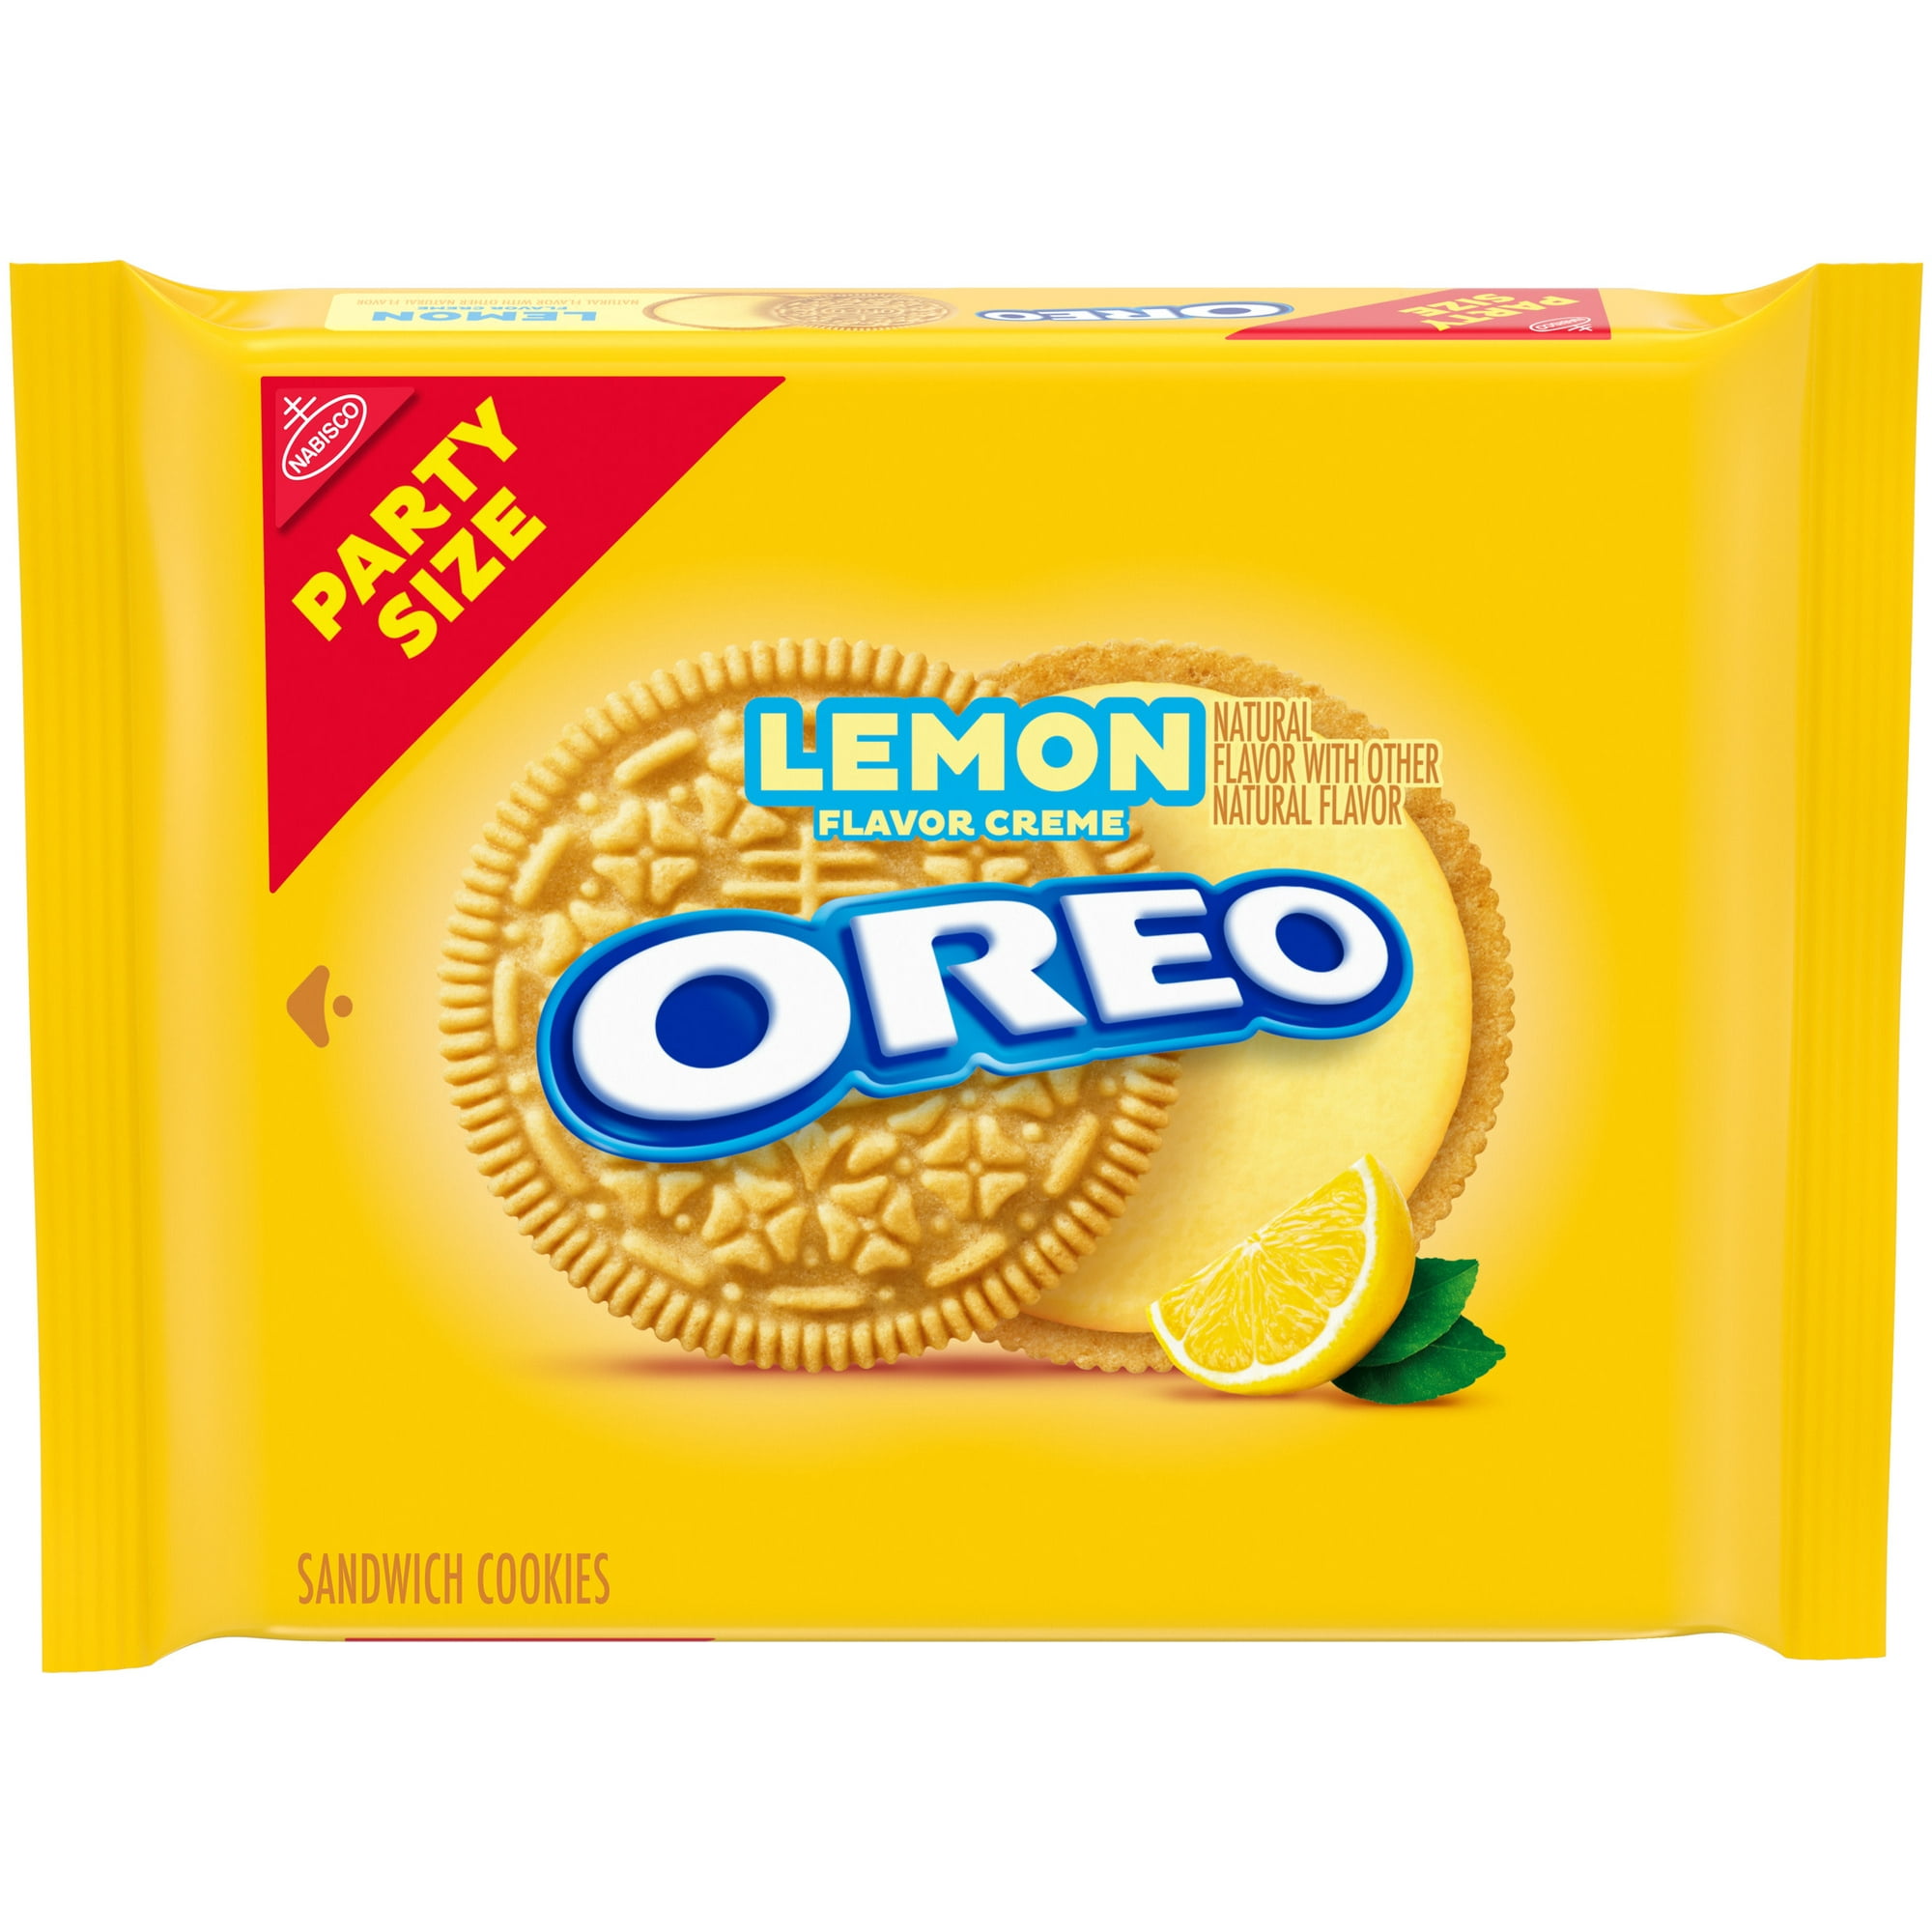 OREO Lemon Creme Sandwich Cookies, Party Size, 26.7 oz